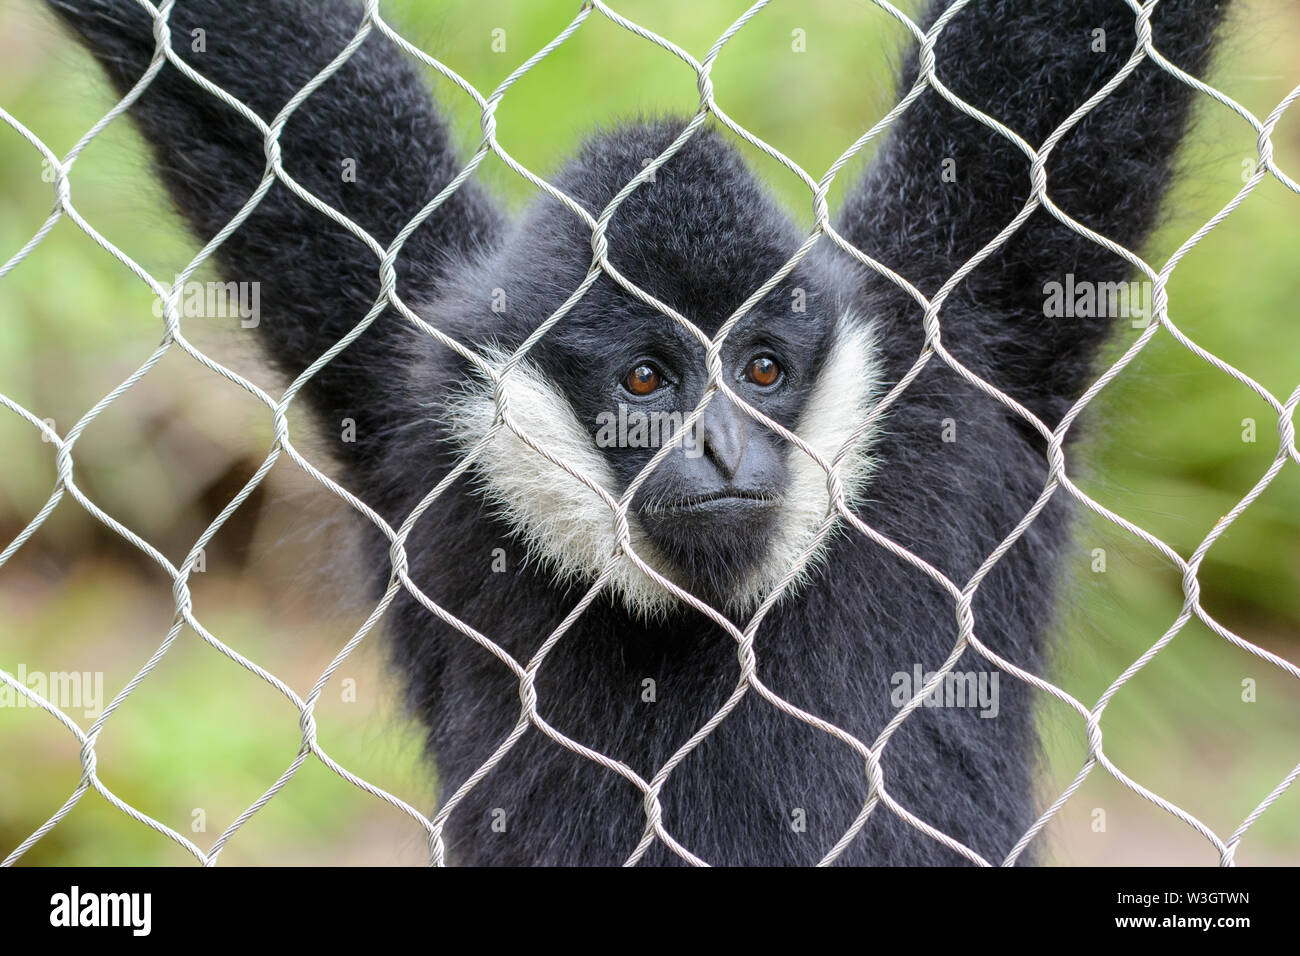 Bianco-cheeked spider monkey (Ateles marginatus) nella gabbia. Triste guardare in faccia. Foto Stock